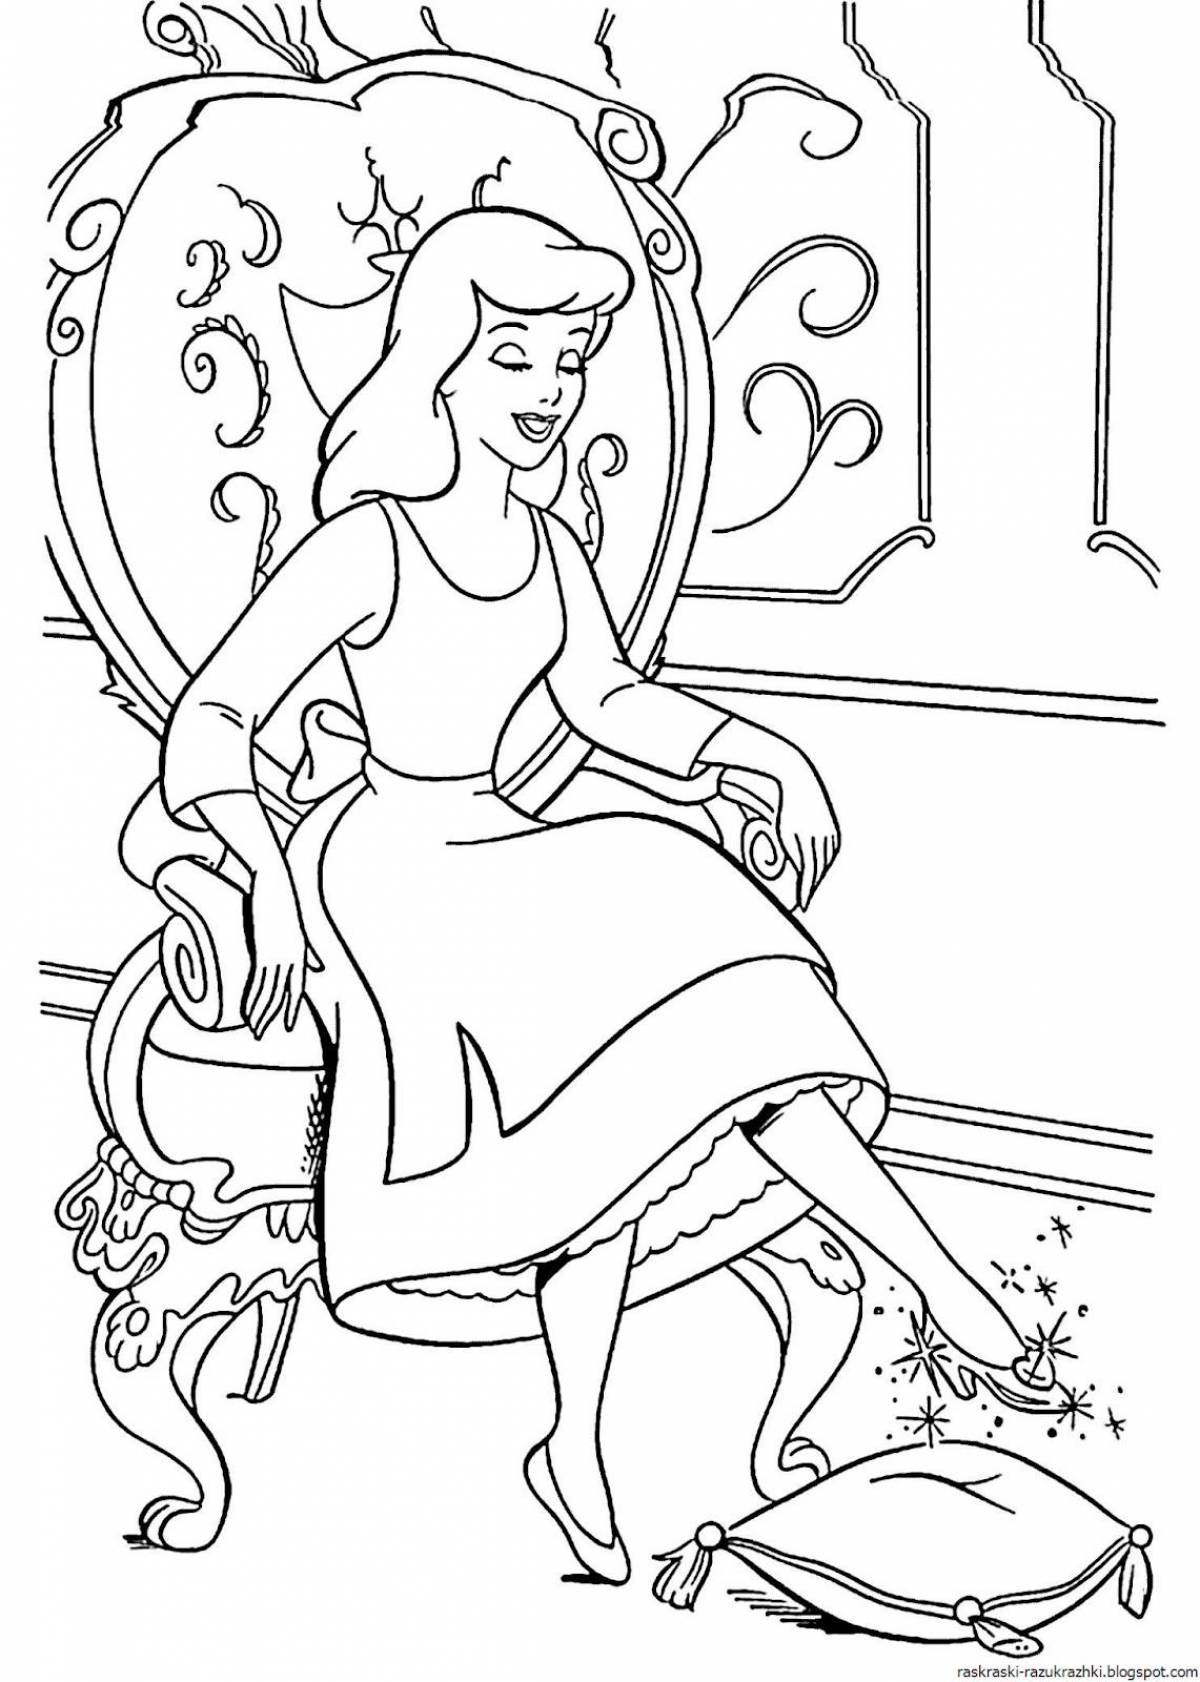 Violent Cinderella coloring pages for kids